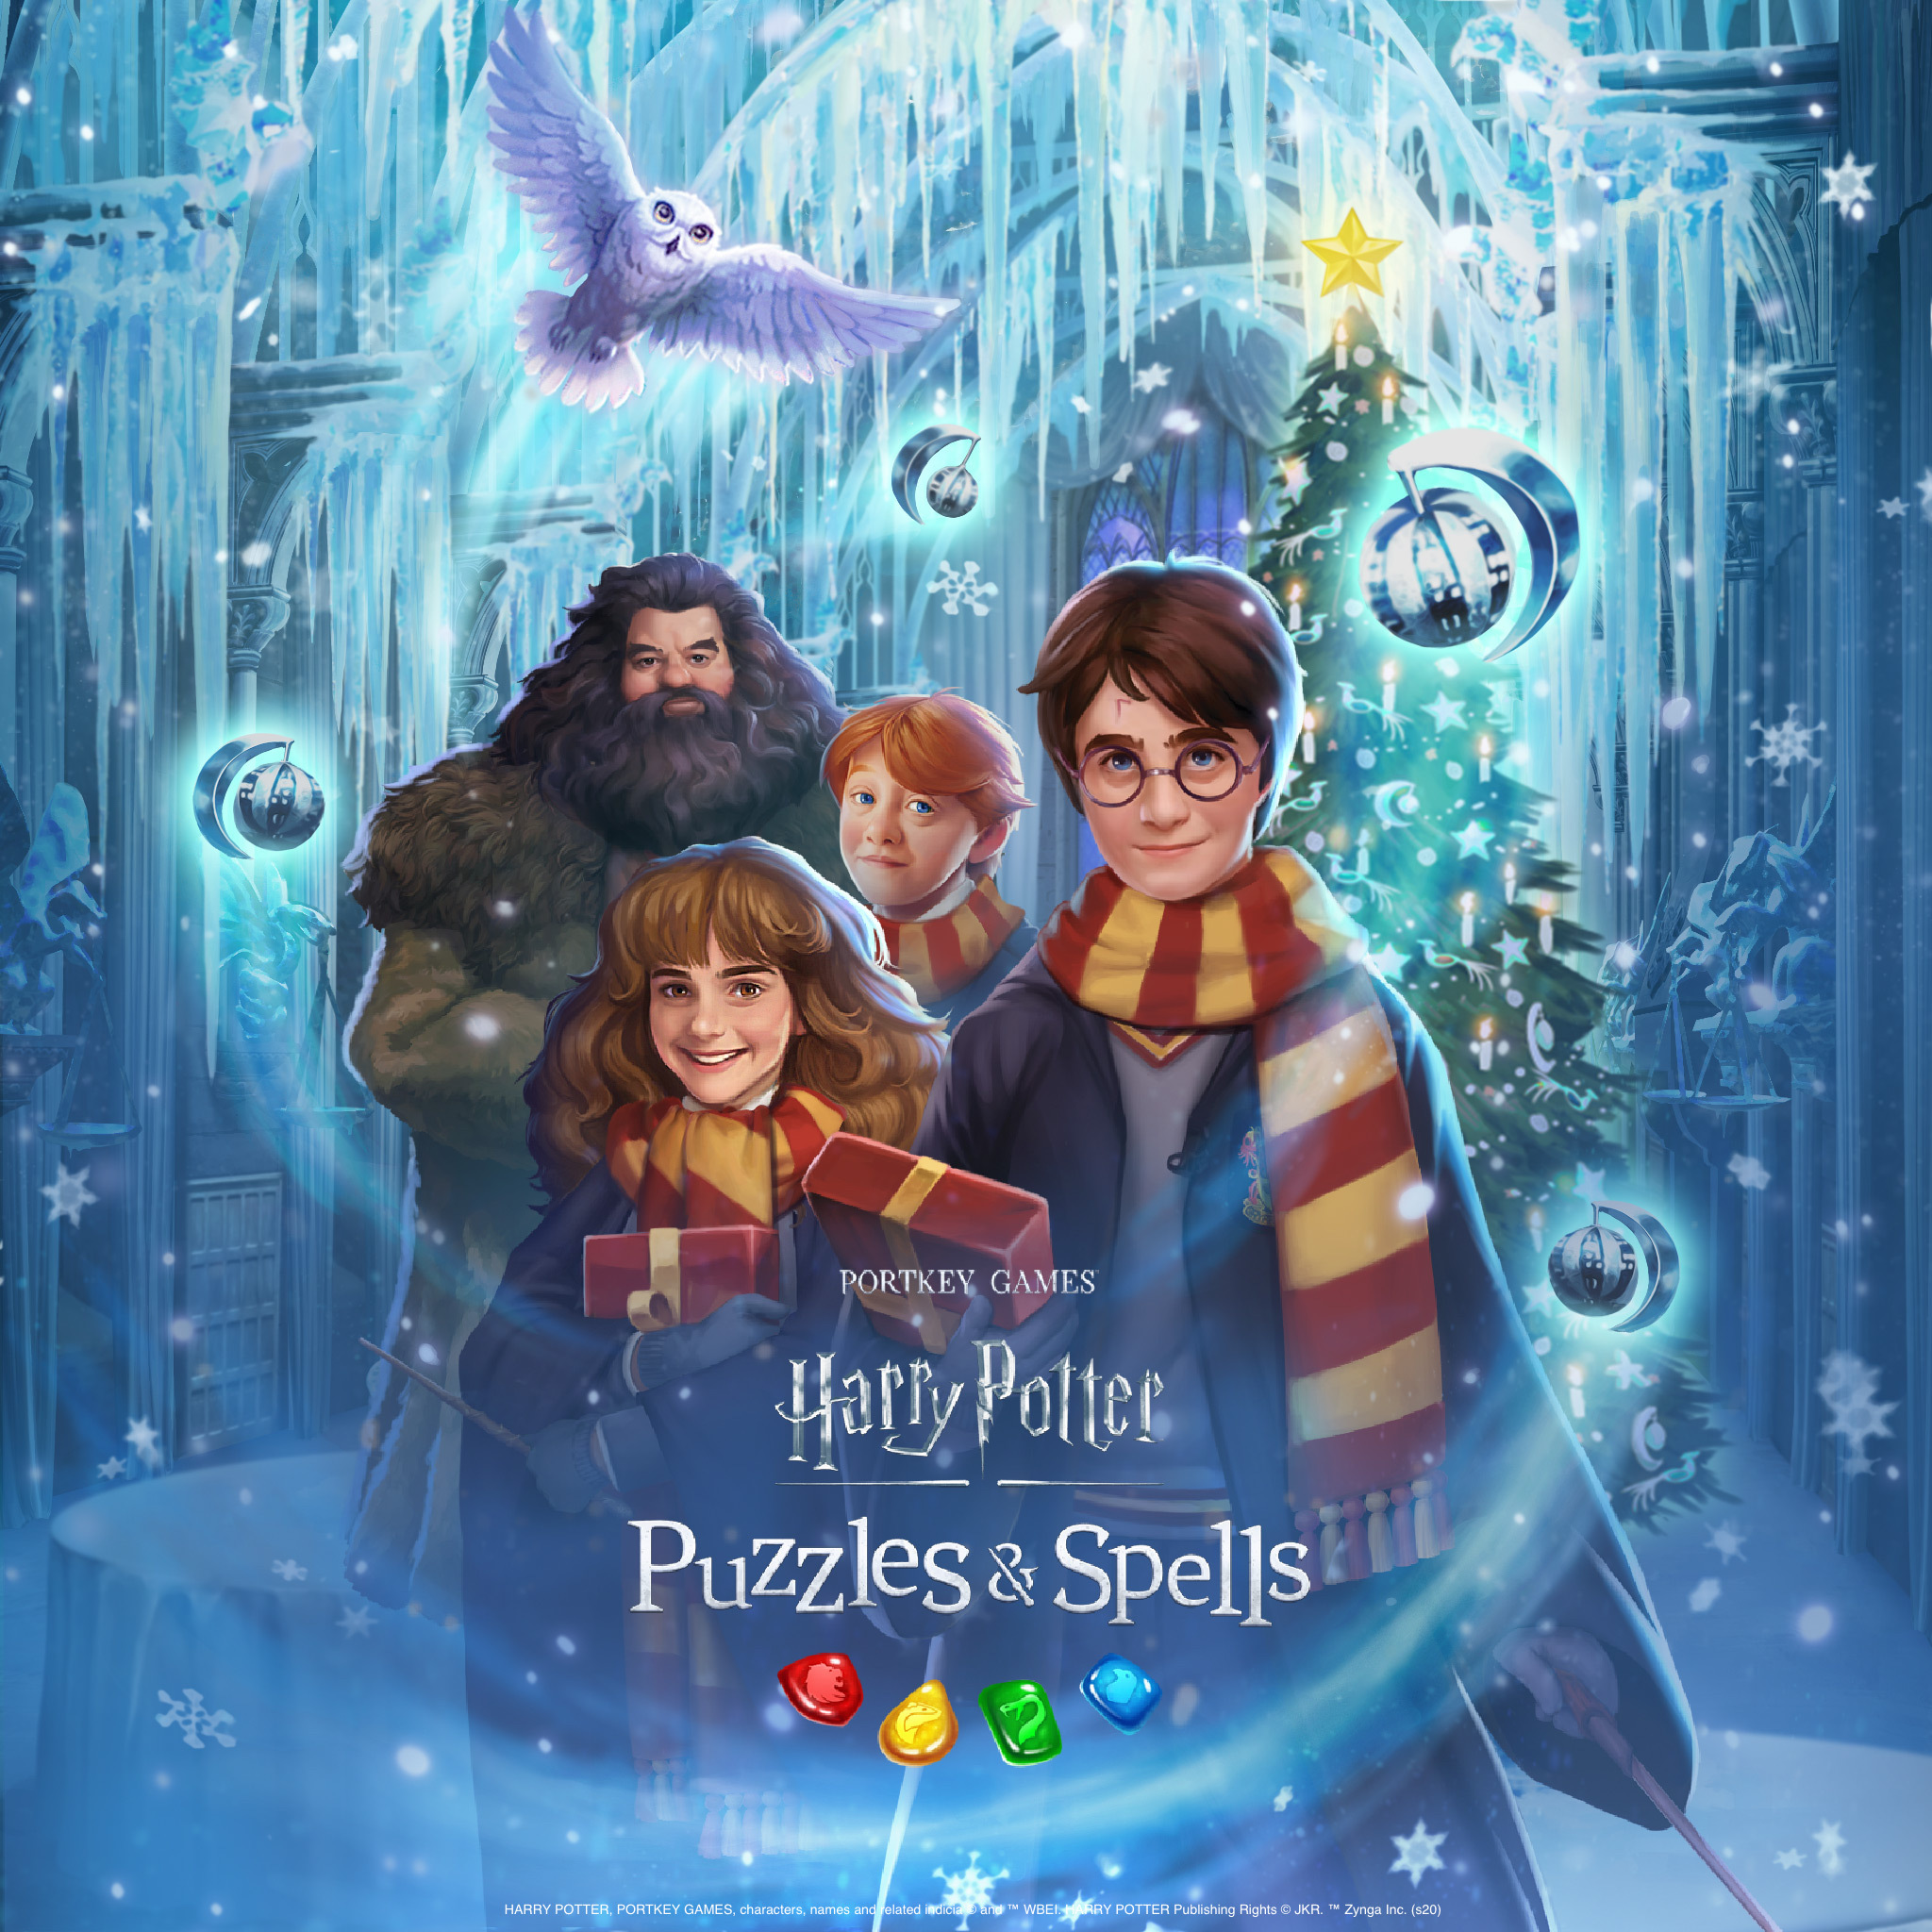 Harry Potter: Puzzles & Spells đã chính thức ra mắt phiên bản đặc biệt dành riêng cho mùa Lễ Giáng Sinh. Trò chơi mang đến cho người chơi những thử thách, kỹ năng và trí thông minh để giải quyết các câu đố phép thuật trong một bầu không khí noel đầy ấm áp. Hãy cùng tham gia và trải nghiệm những giây phút tuyệt vời này trong mùa Lễ Giáng Sinh.